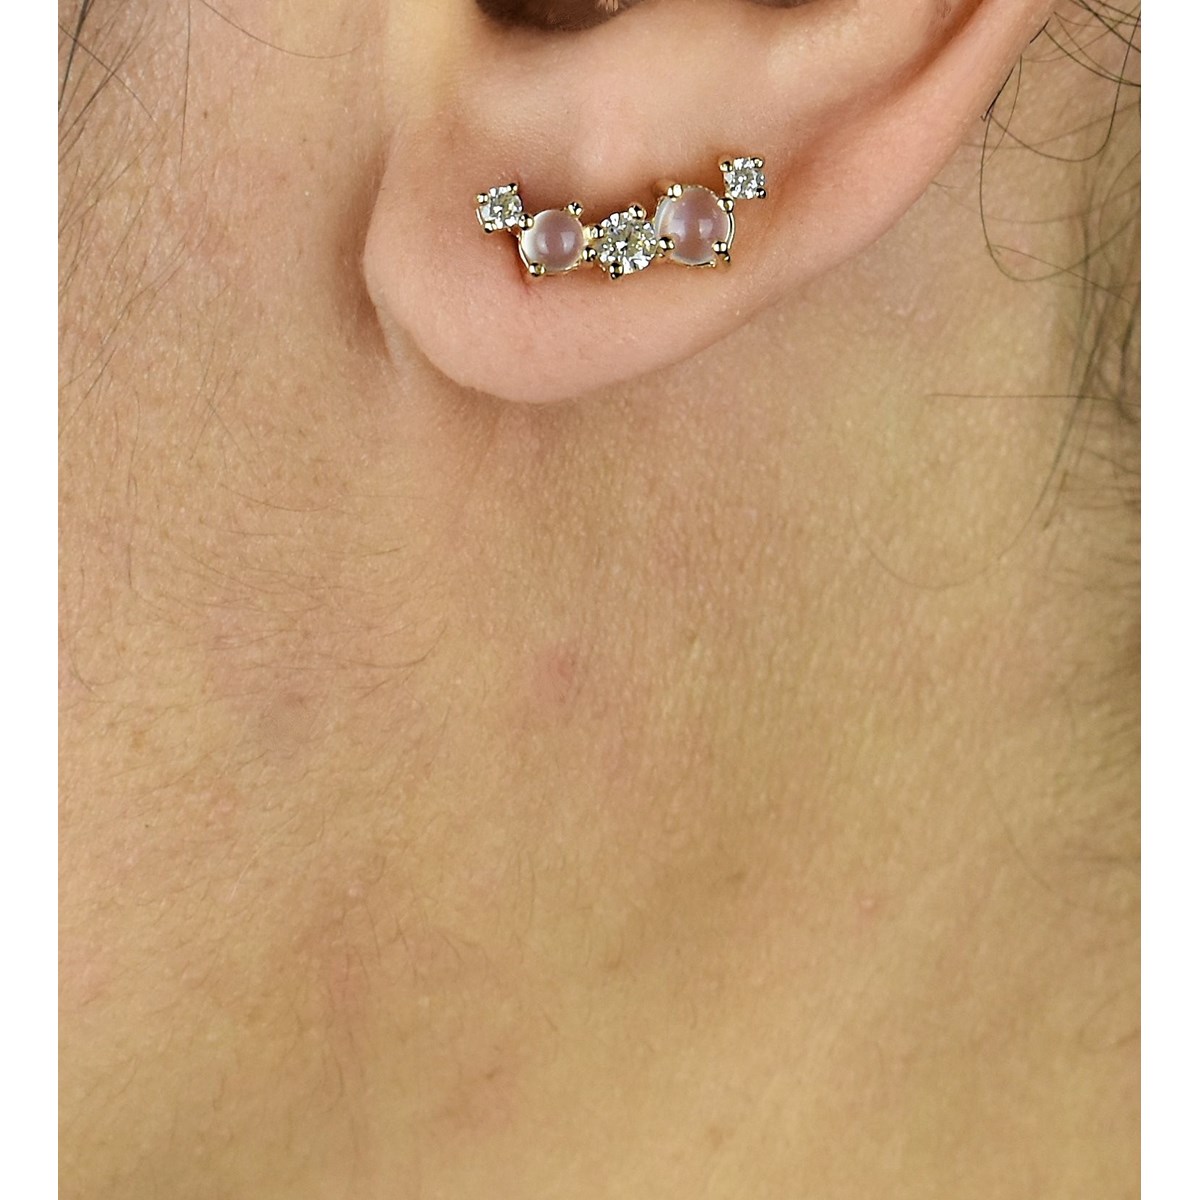 Boucles d'oreilles grimpantes contour de lobe pierres de lune et oxydes de zirconium Plaqué OR 750 3 microns - vue 2